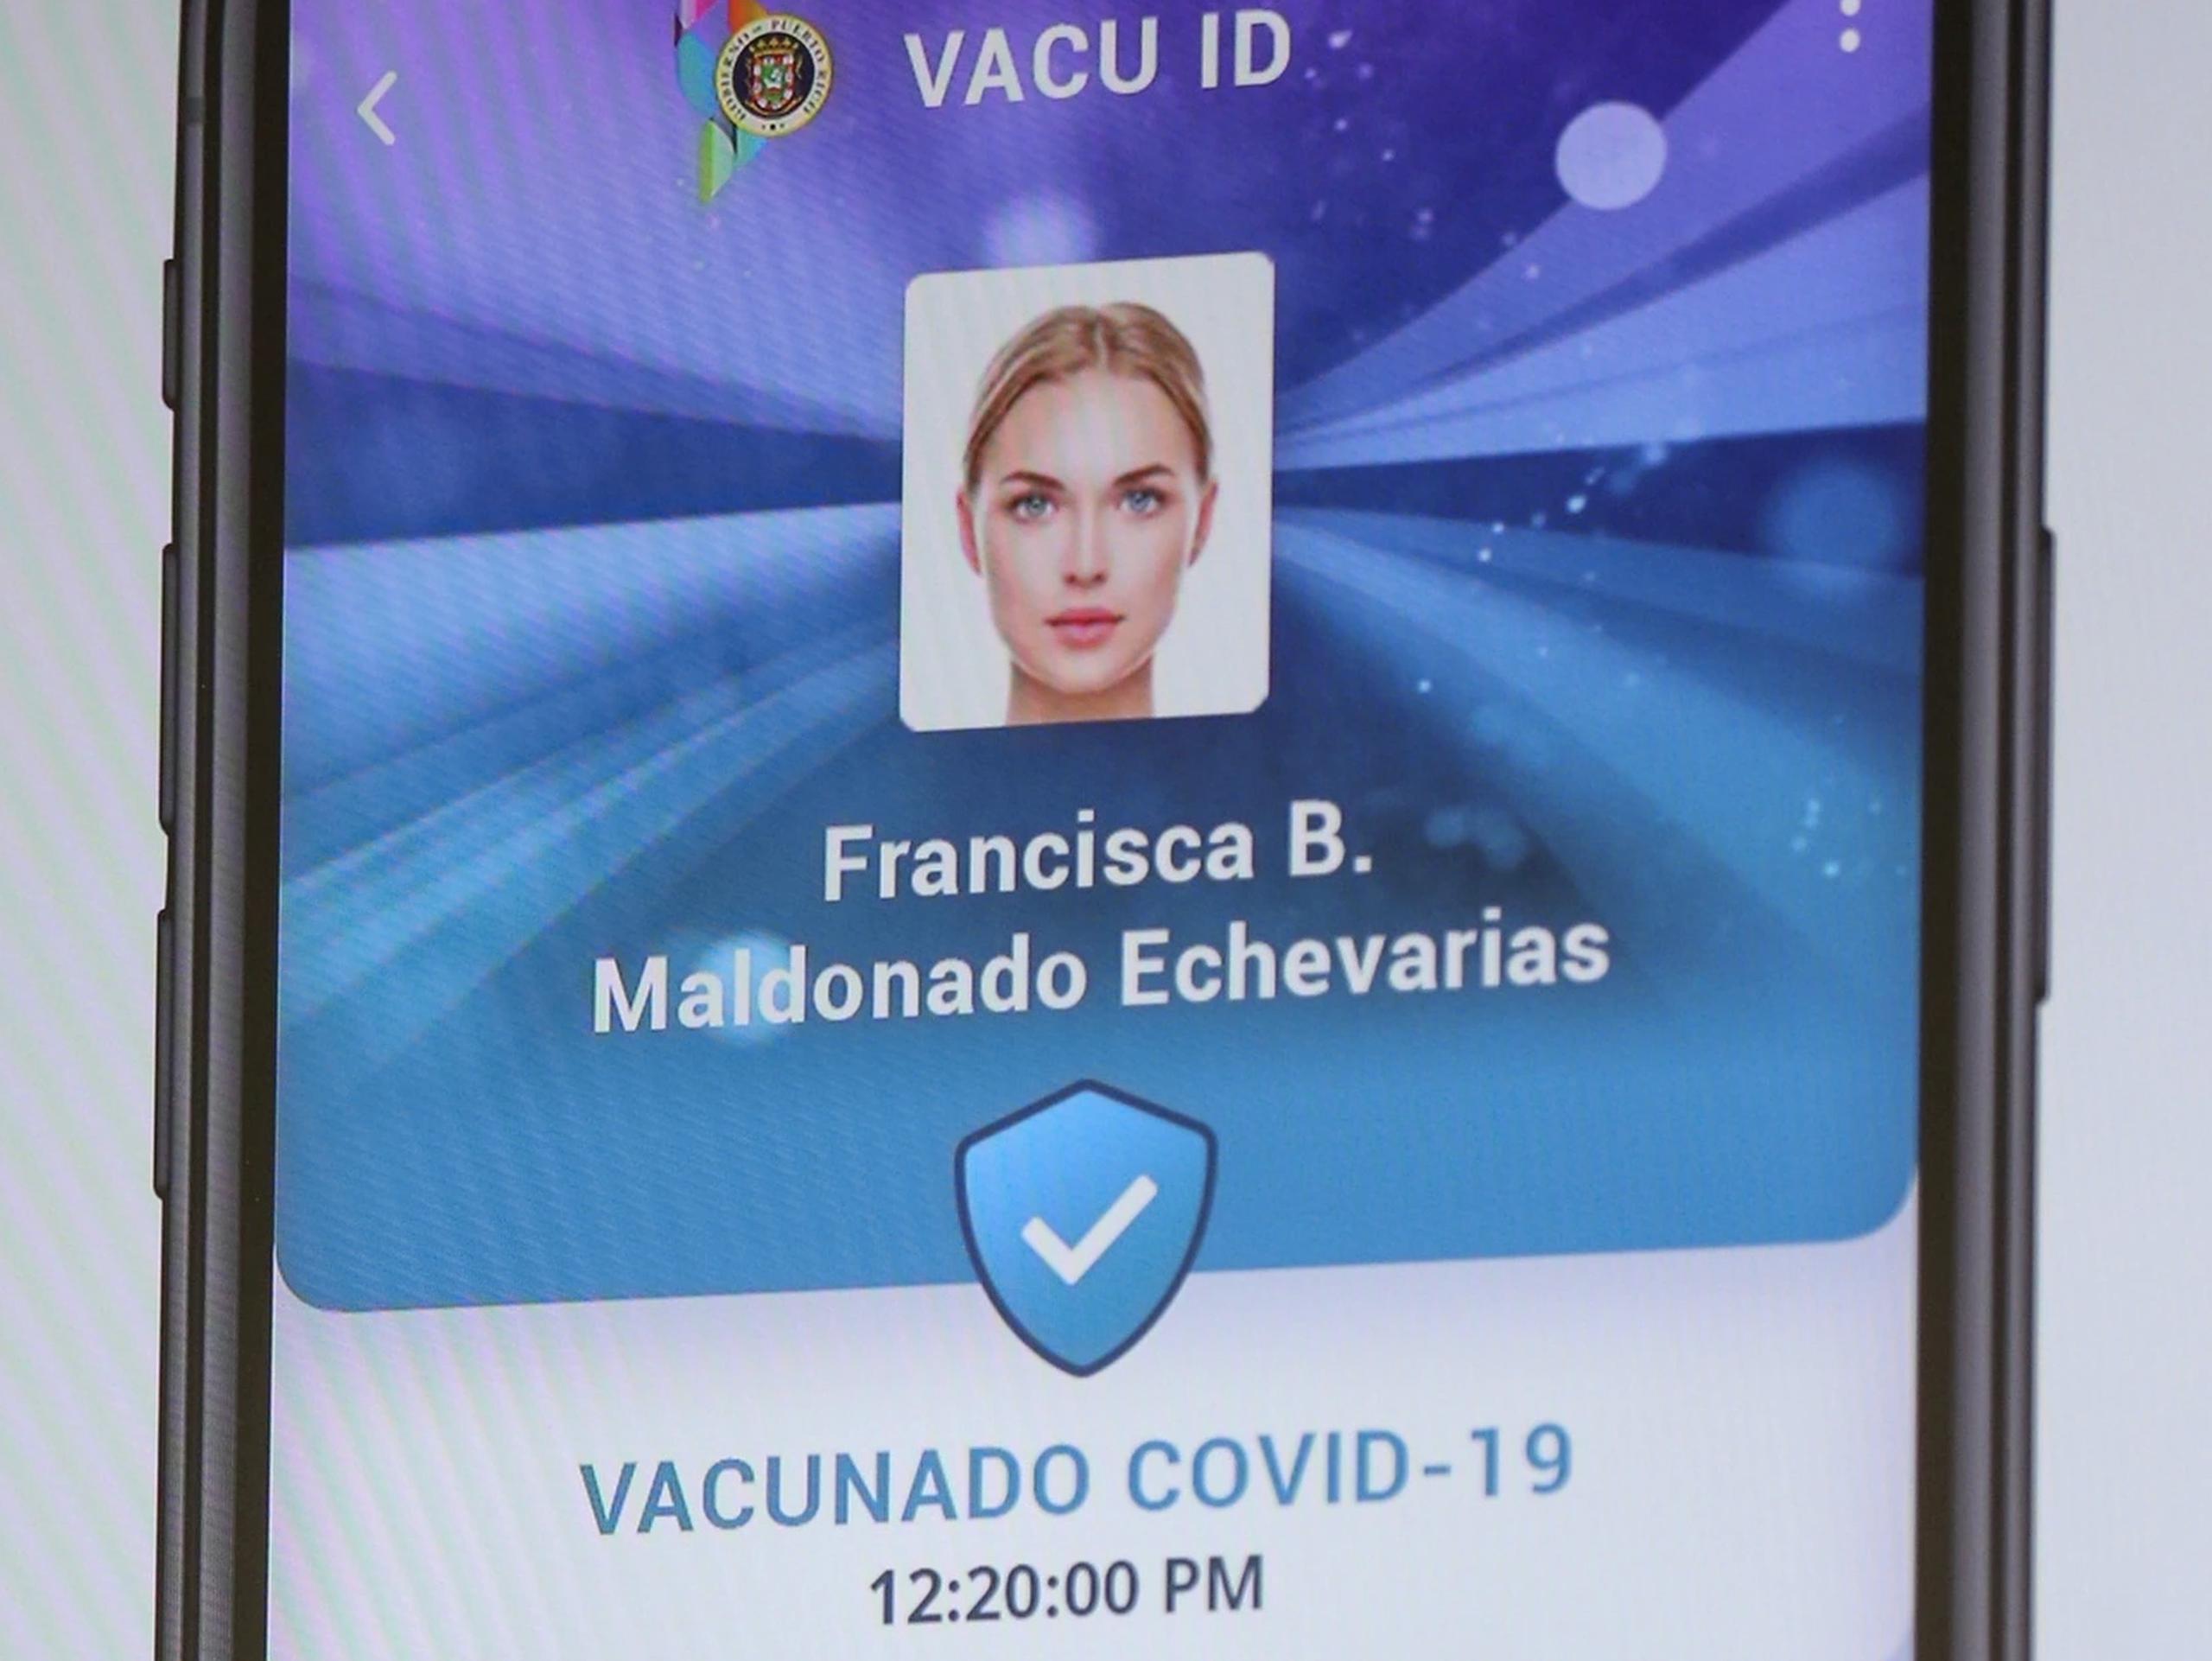 El VacuID se puede obtener a través de la aplicación del Cesco Digital.